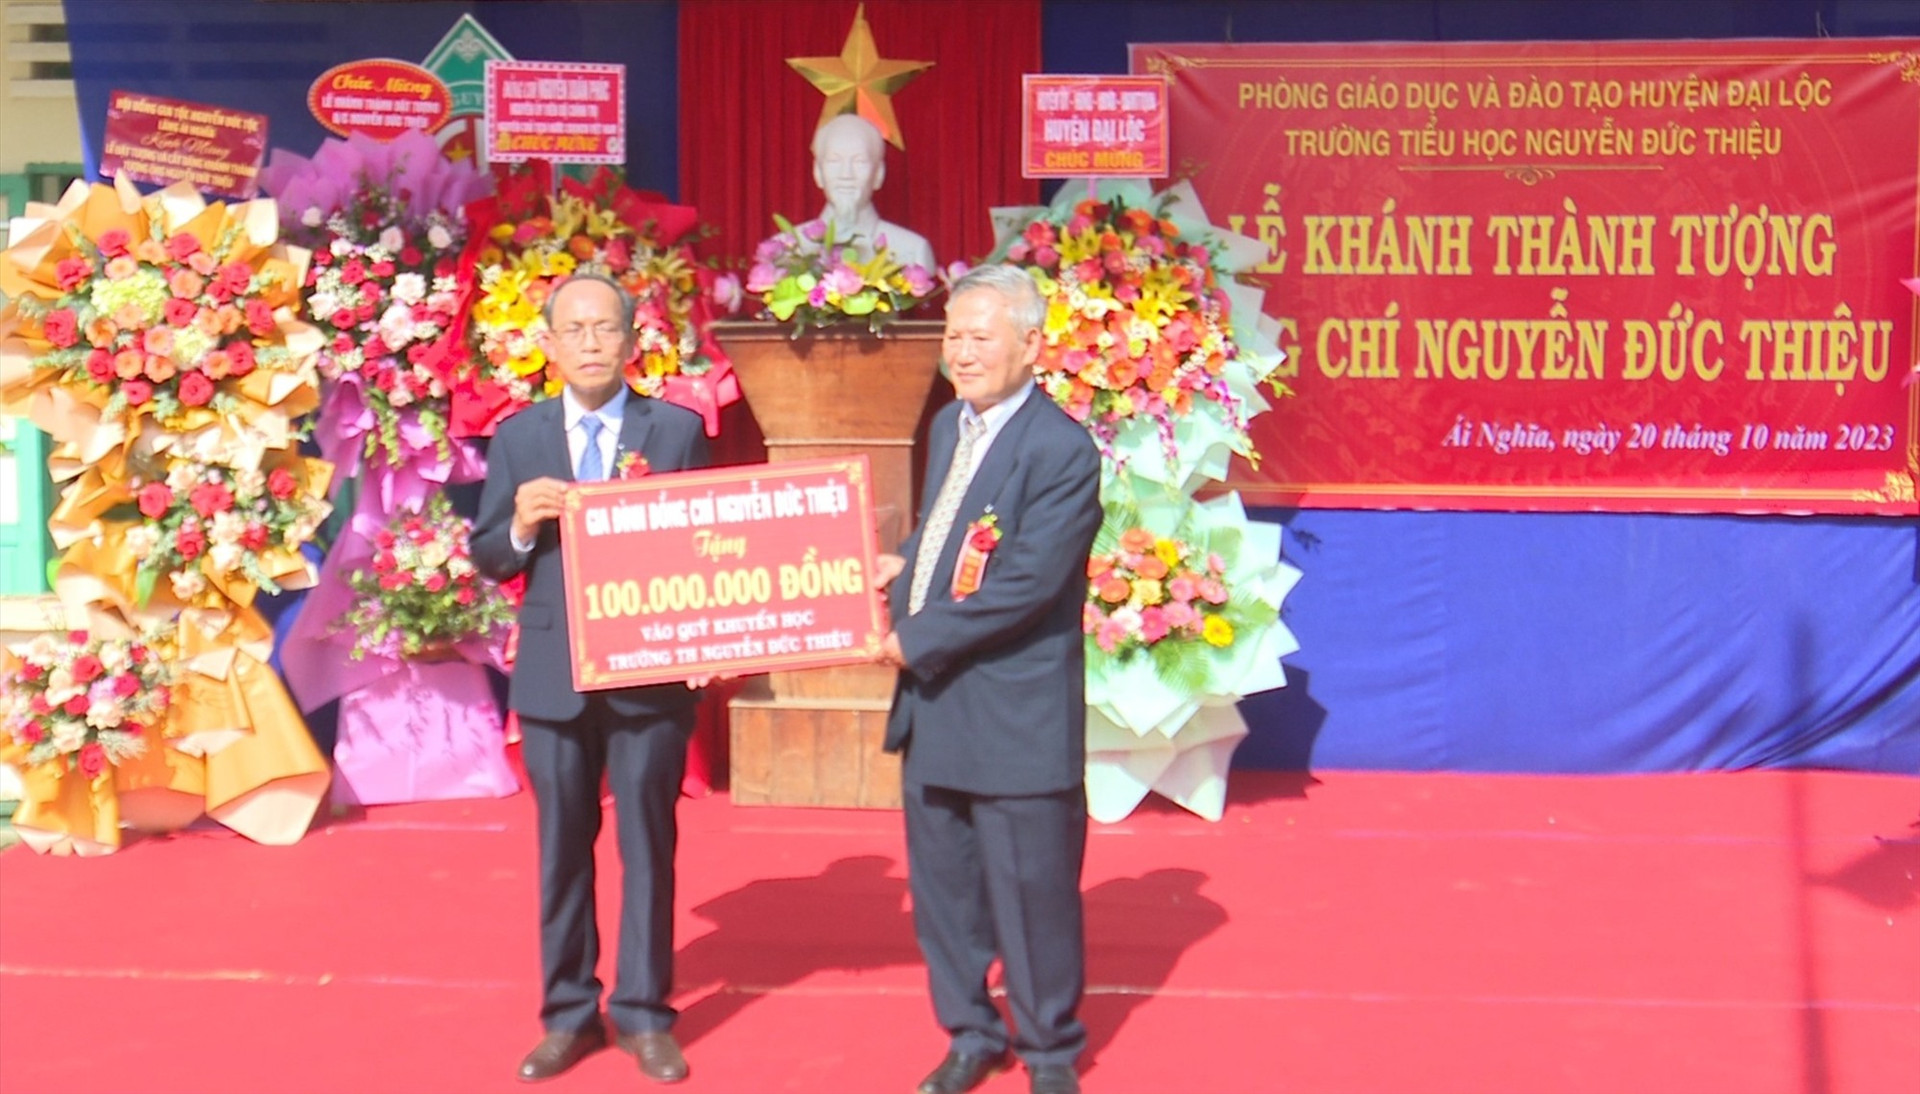 Gia đình đồng chí Nguyễn Đức Thiệu trao tặng 100 triệu đồng cho Quỹ học bổng nhà trường. Ảnh: N.D